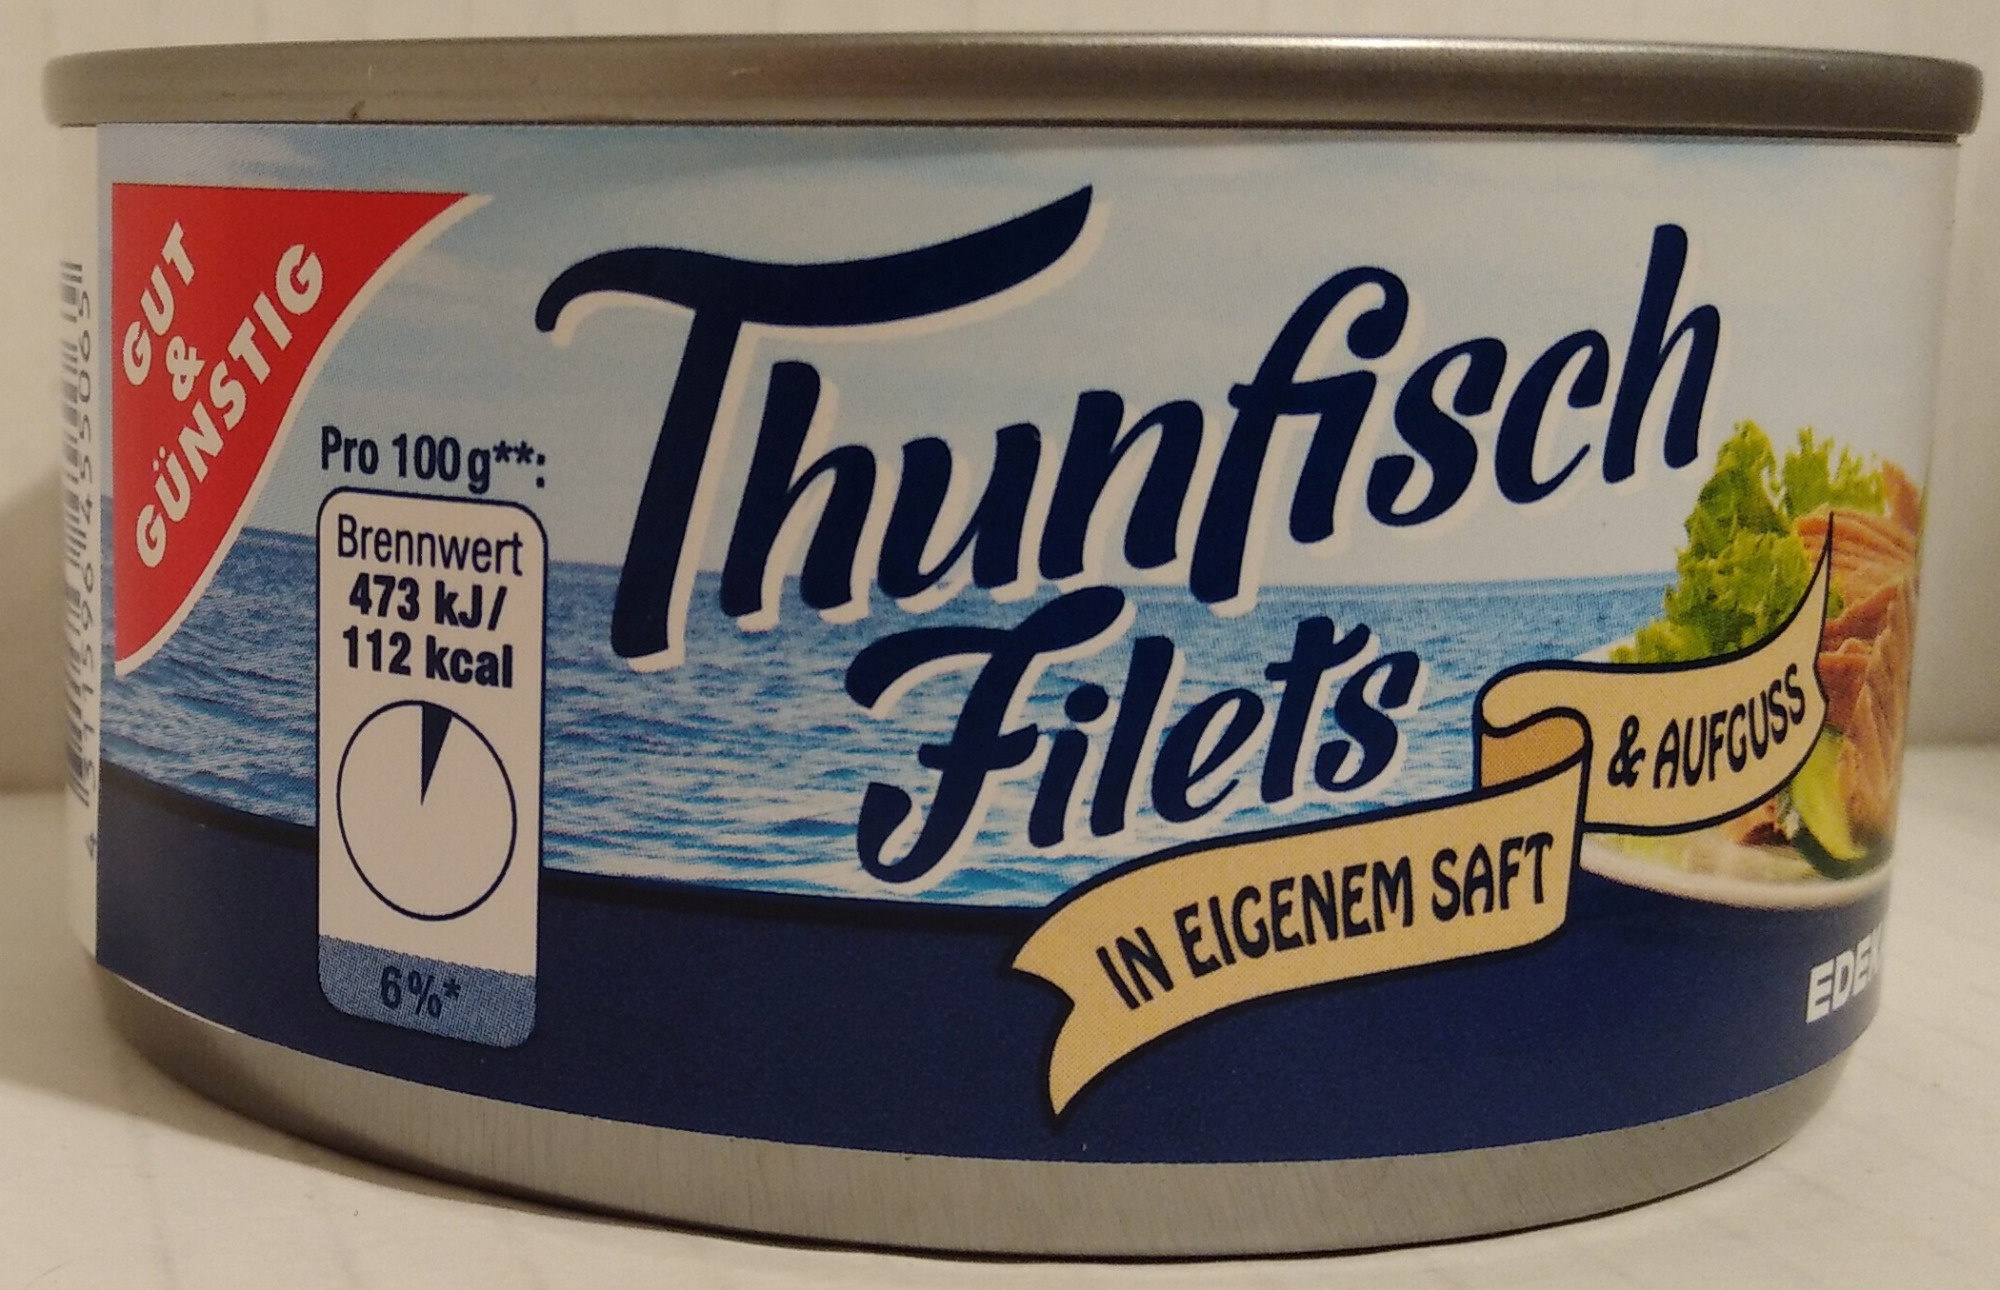 Thunfisch Filets im eigenen Saft - Product - de